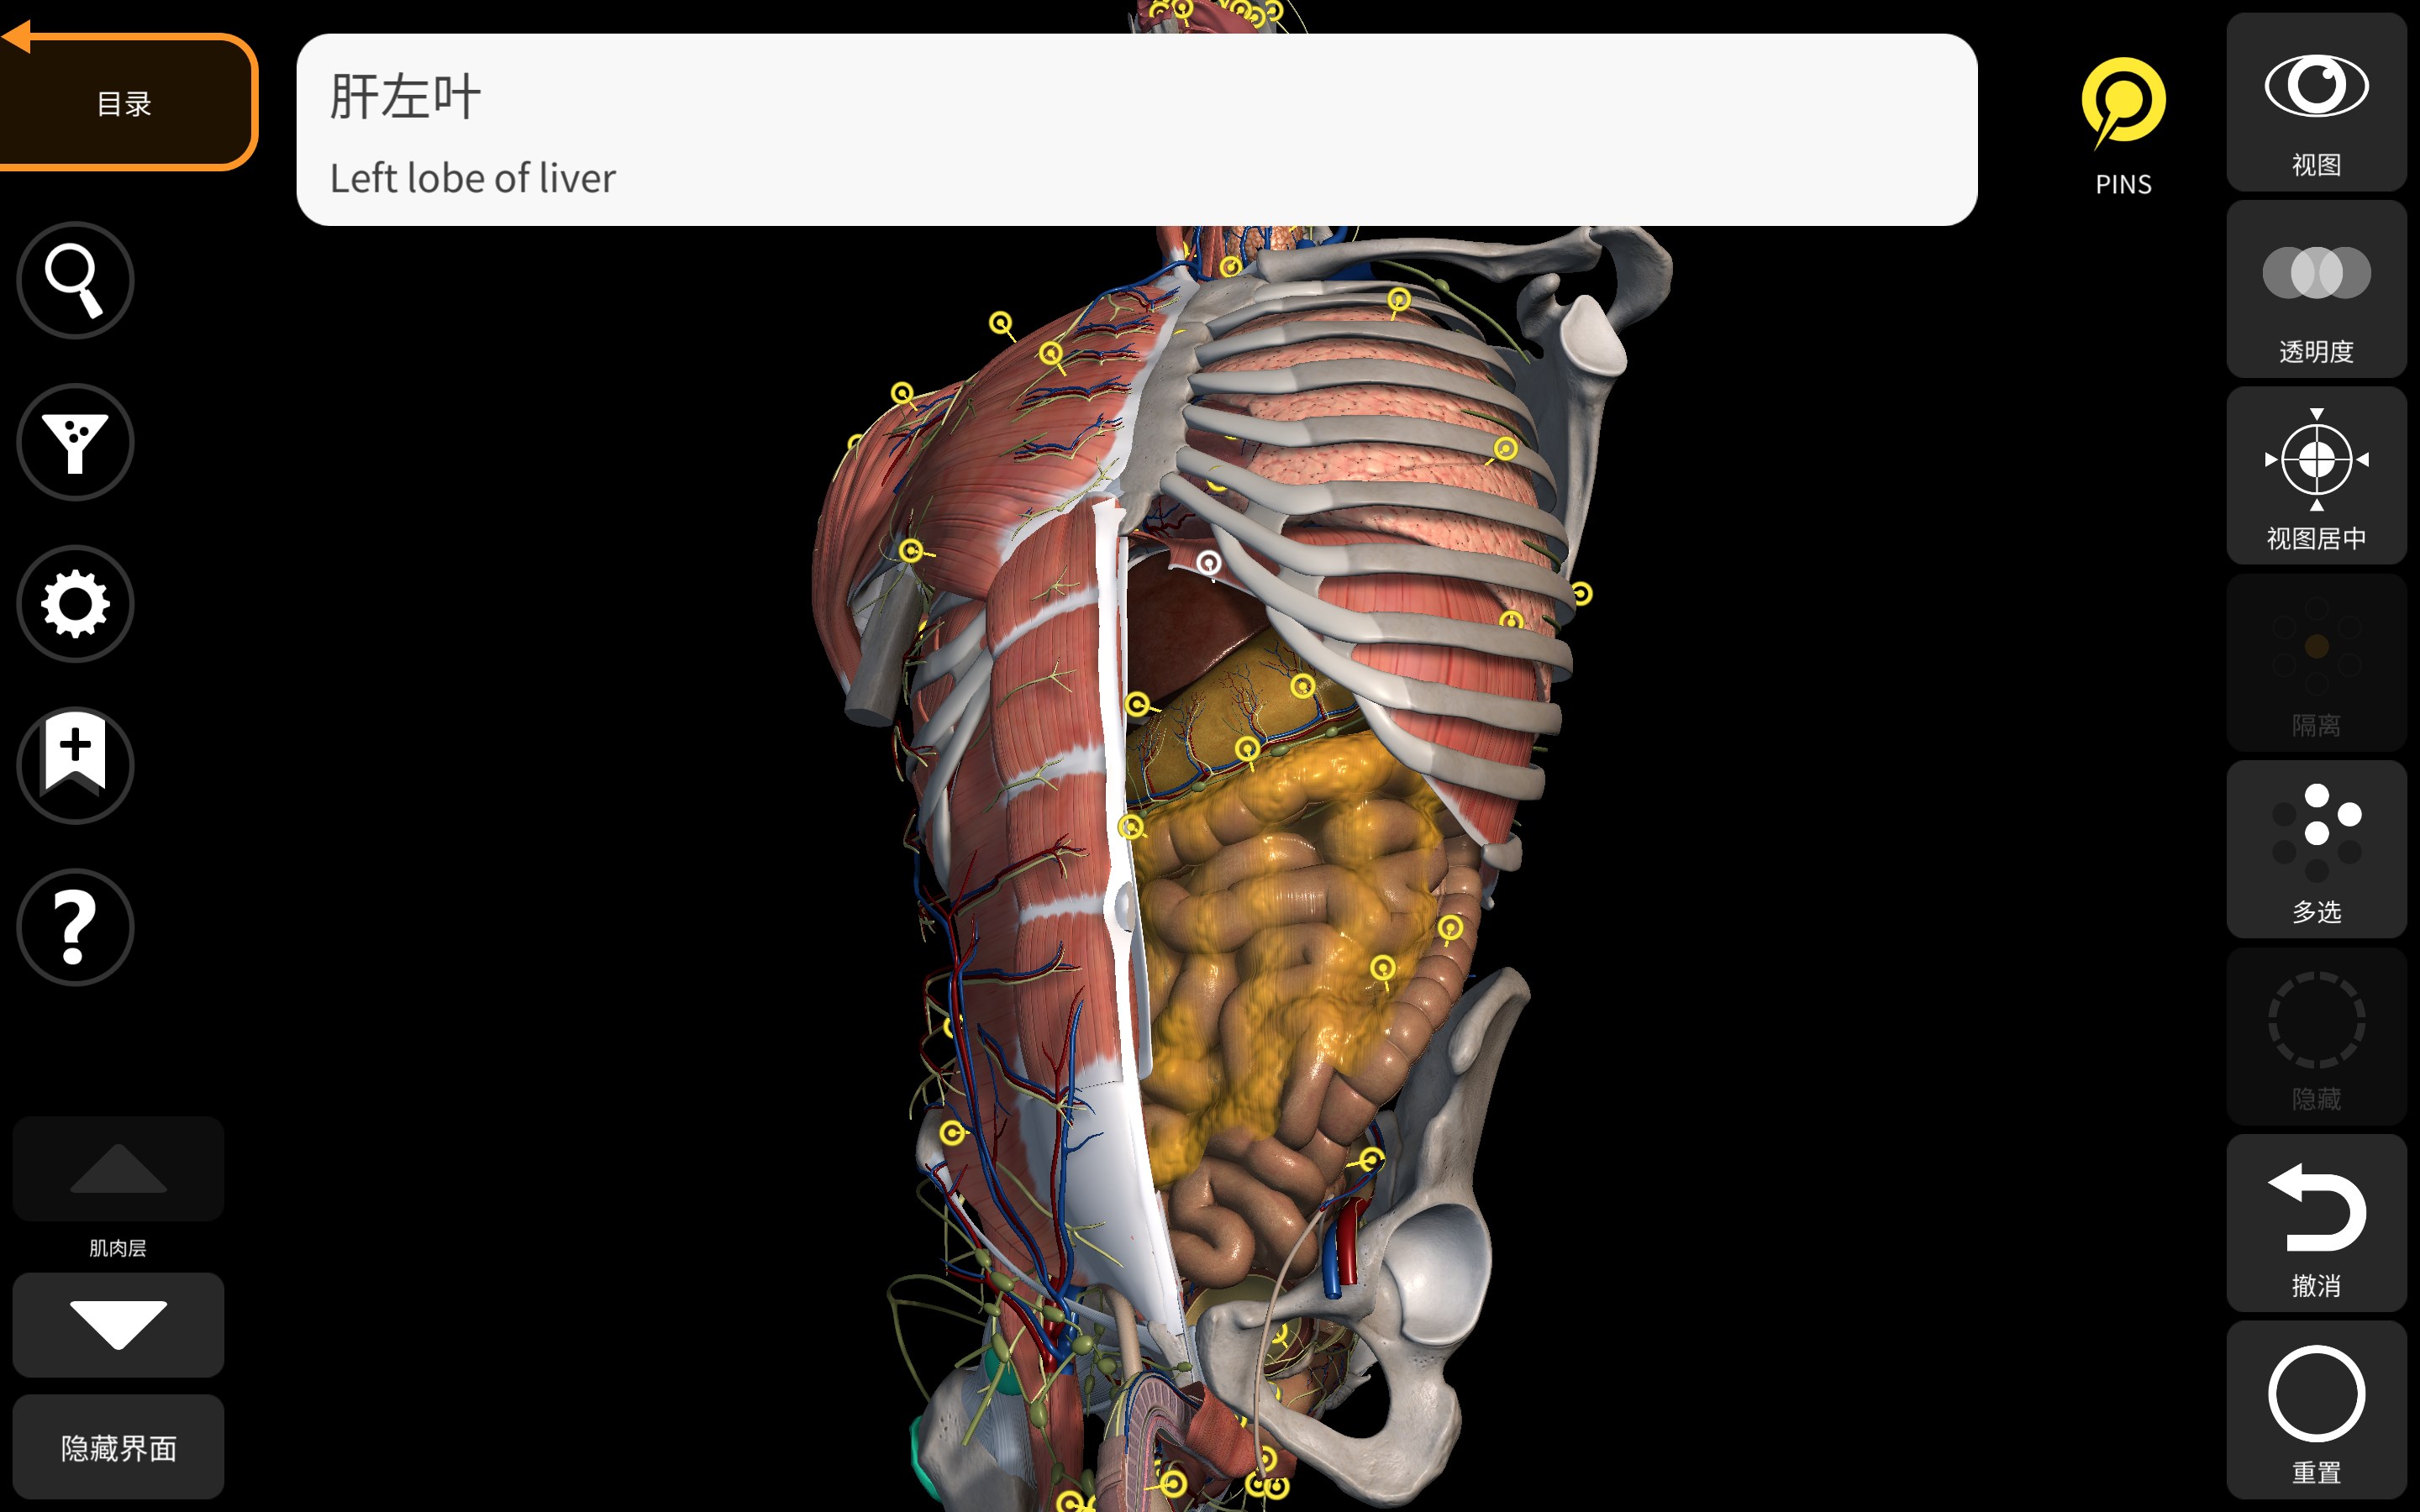 解剖学- 三维图谱- Anatomy 3D Atlas - Microsoft Store 中的官方应用